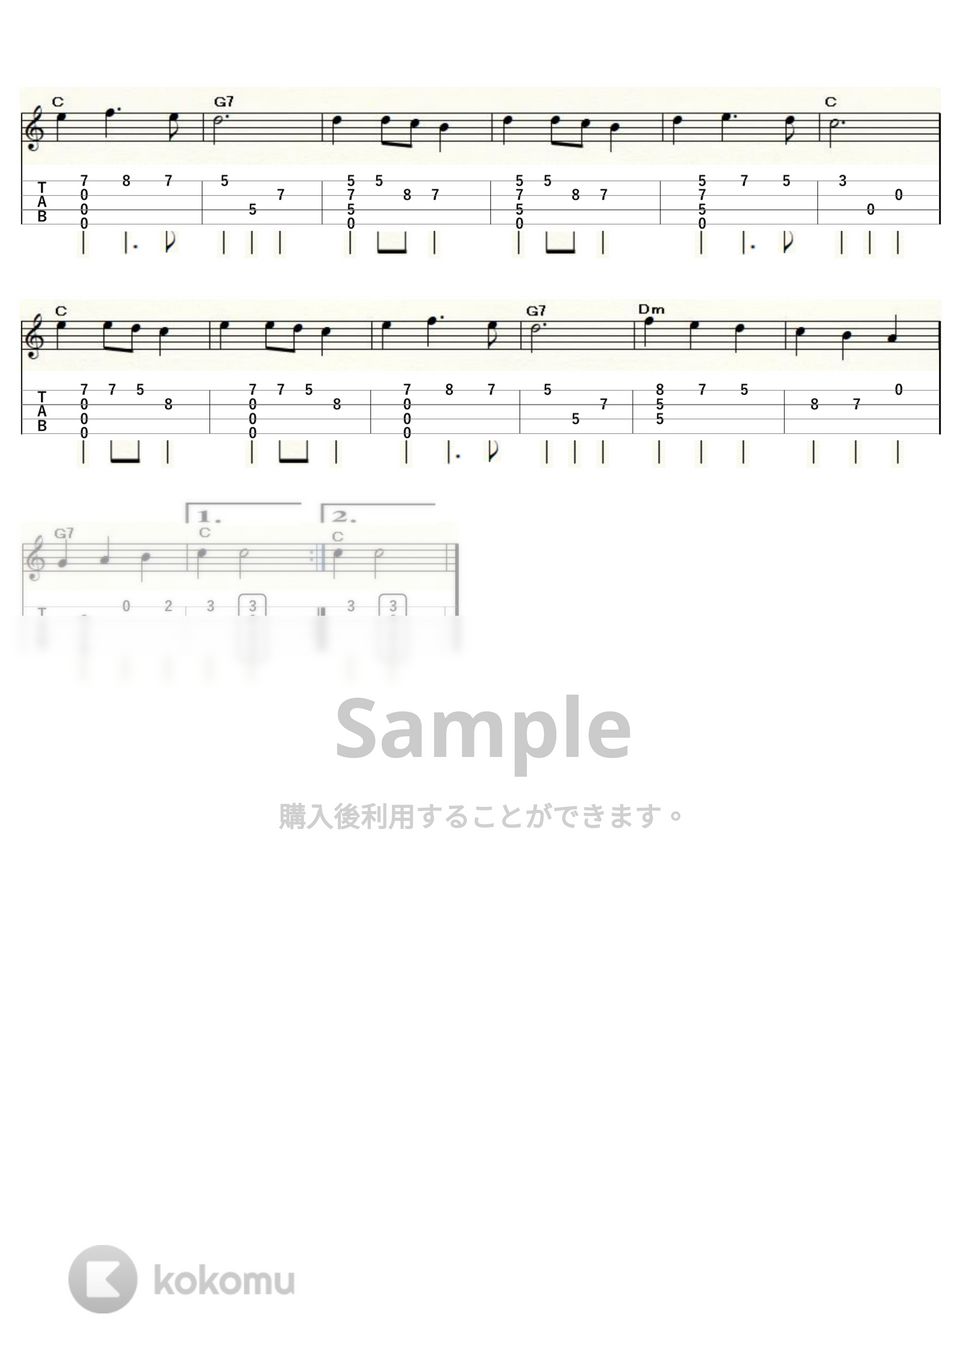 森へ行きましょう (ｳｸﾚﾚｿﾛ / High-G・Low-G / 初級～中級) by ukulelepapa